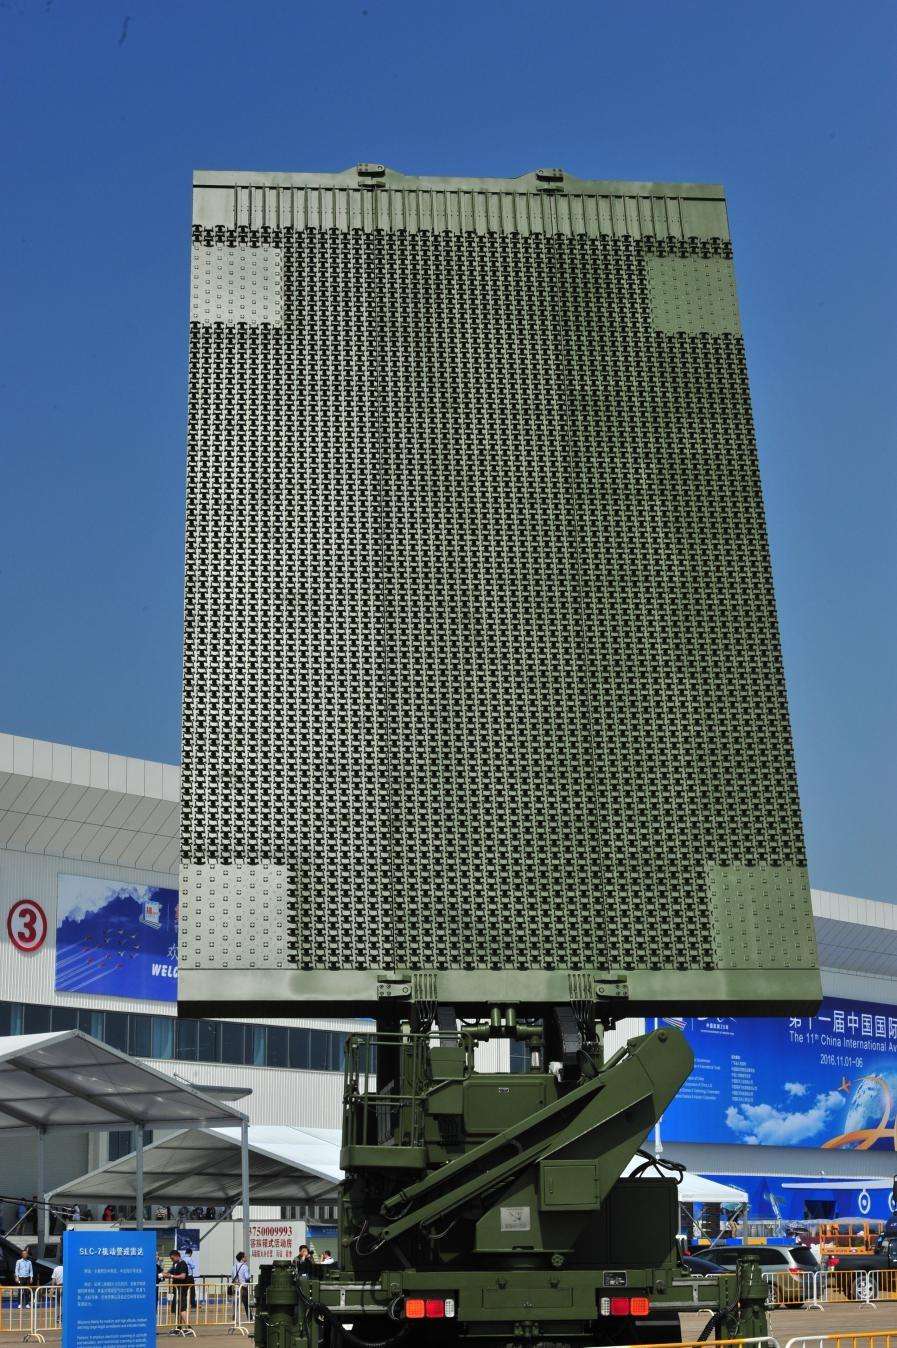 量子雷达测试完成后,将令中国超越美国!